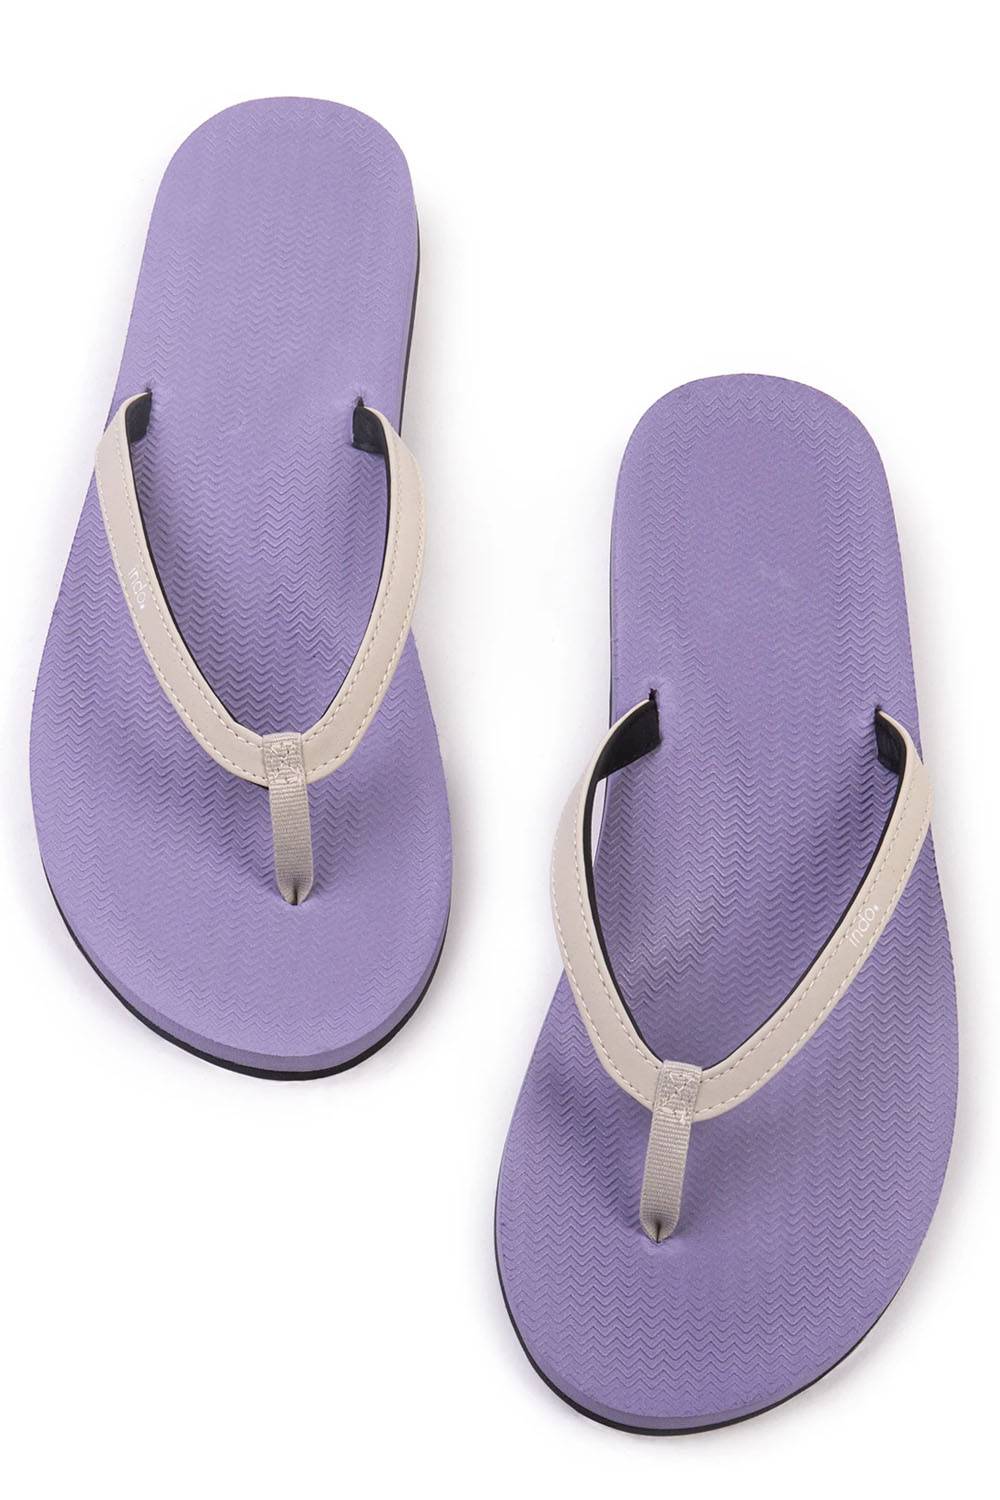 indosole ethical vegan minimalist sandals